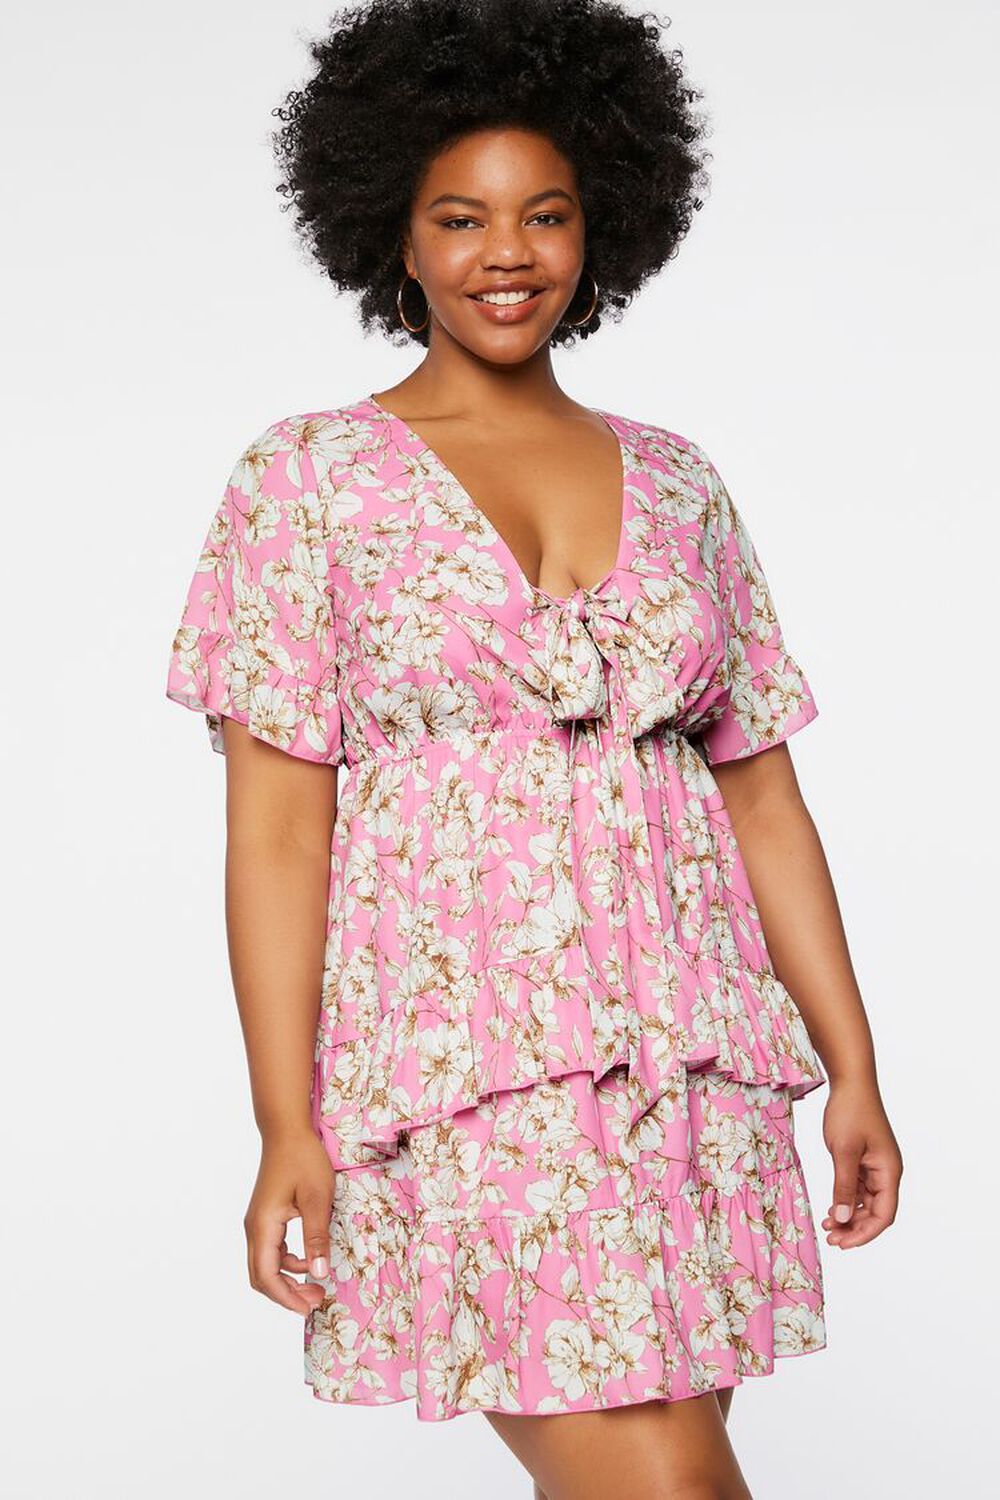 PINK/MULTI Plus Size Floral Print Flounce Dress, image 1